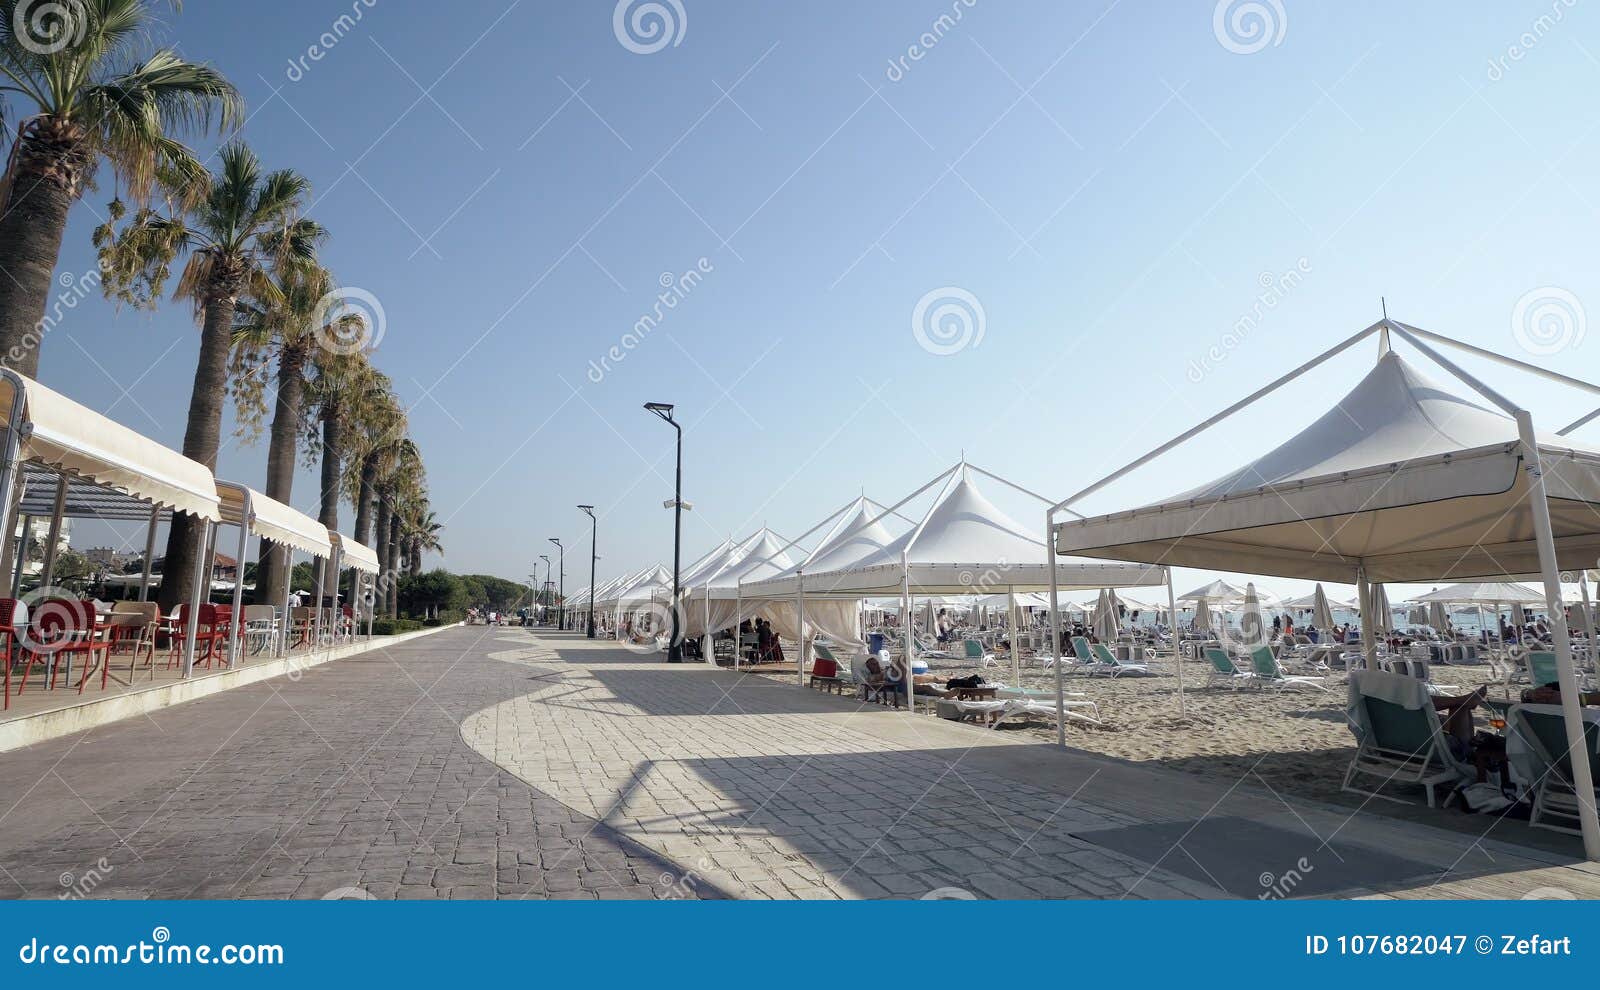 touris walk pov on promenade seafront